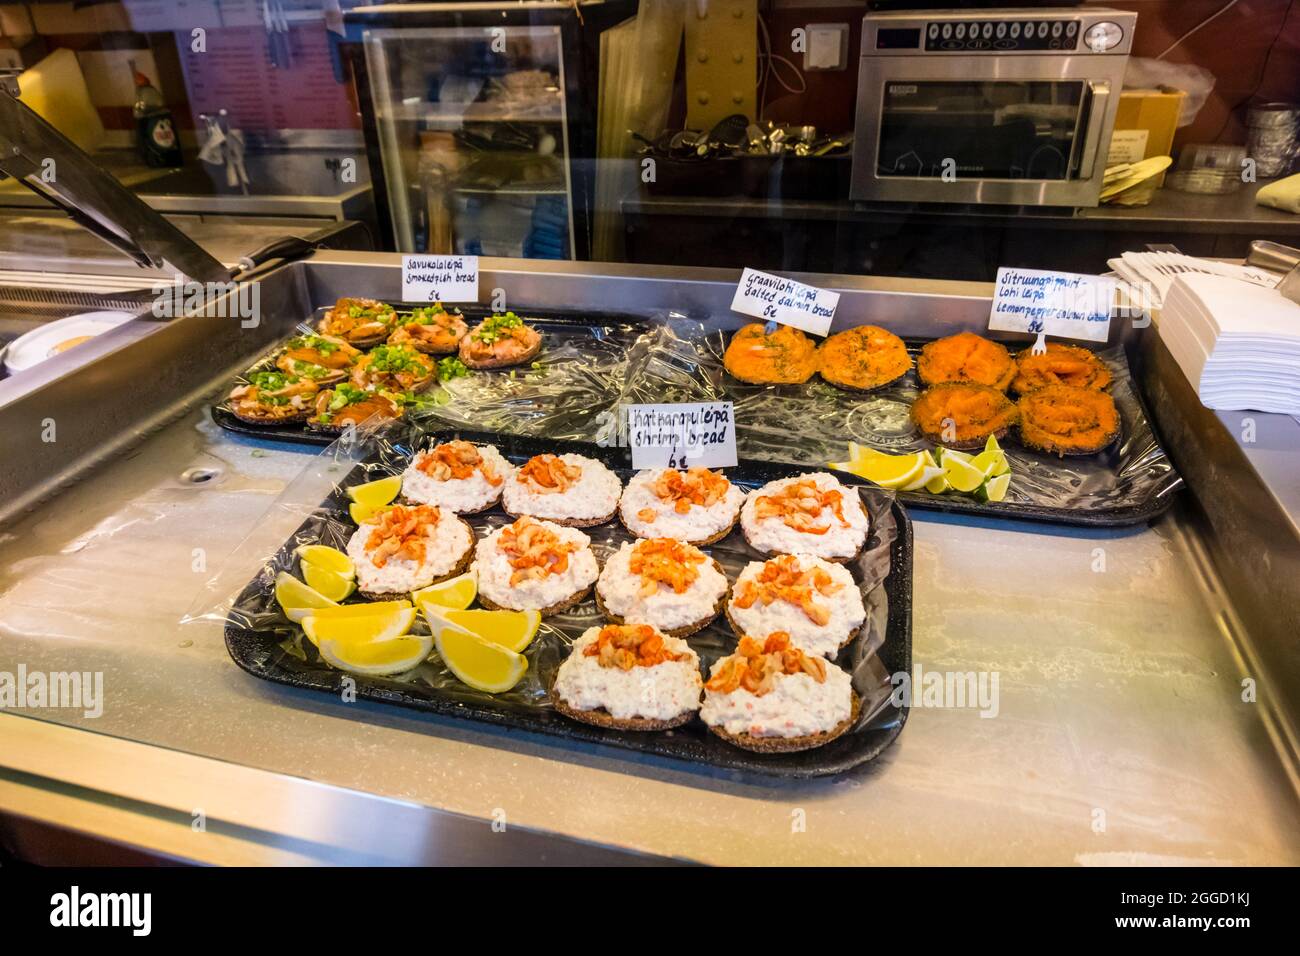 Sandwiches au saumon et aux crevettes, Vanha Kauppahalli, Eteläranta, Helsinki, Finlande Banque D'Images